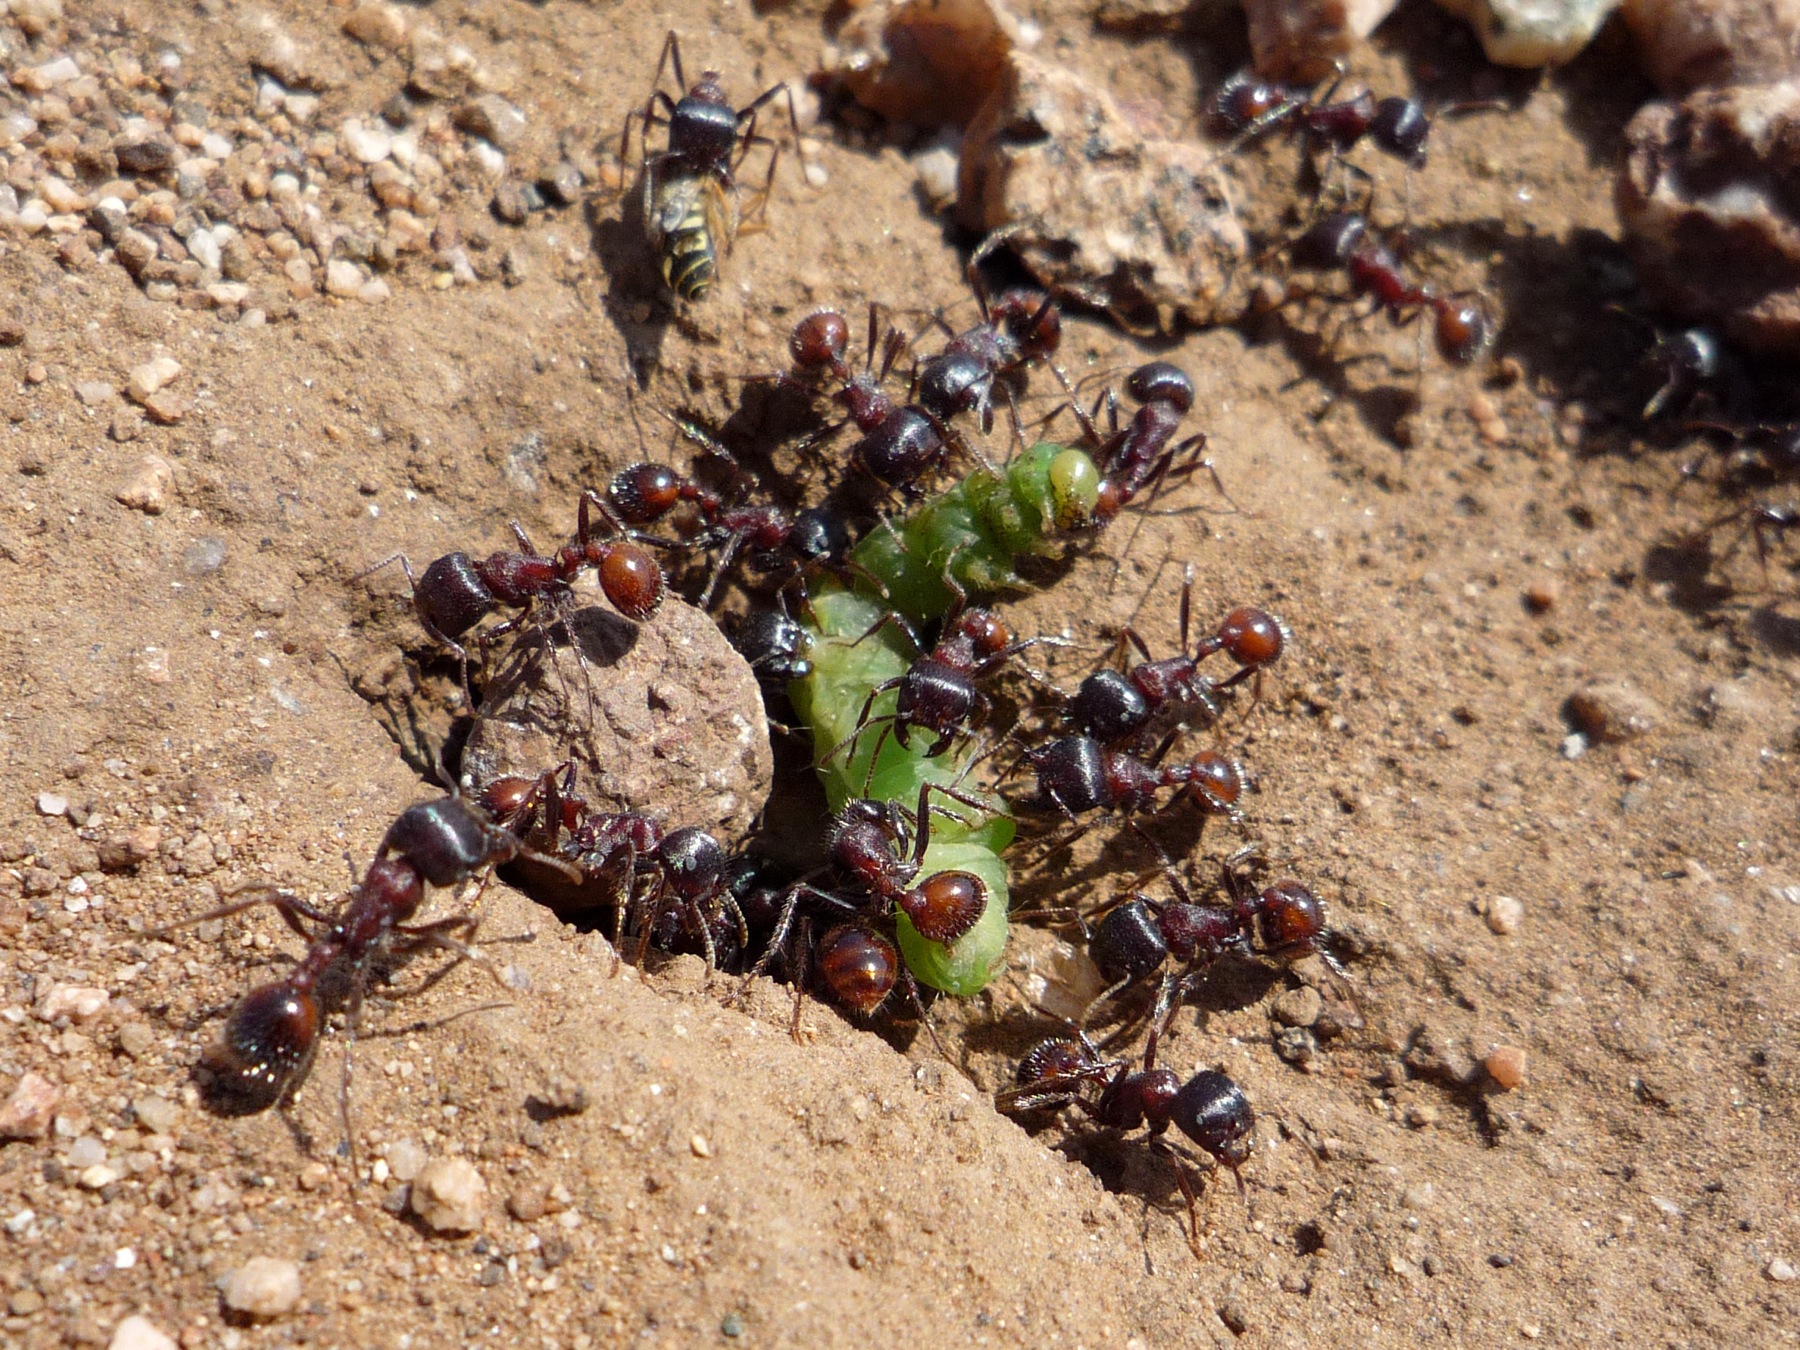 Ants Eating A Caterpillar.jpg